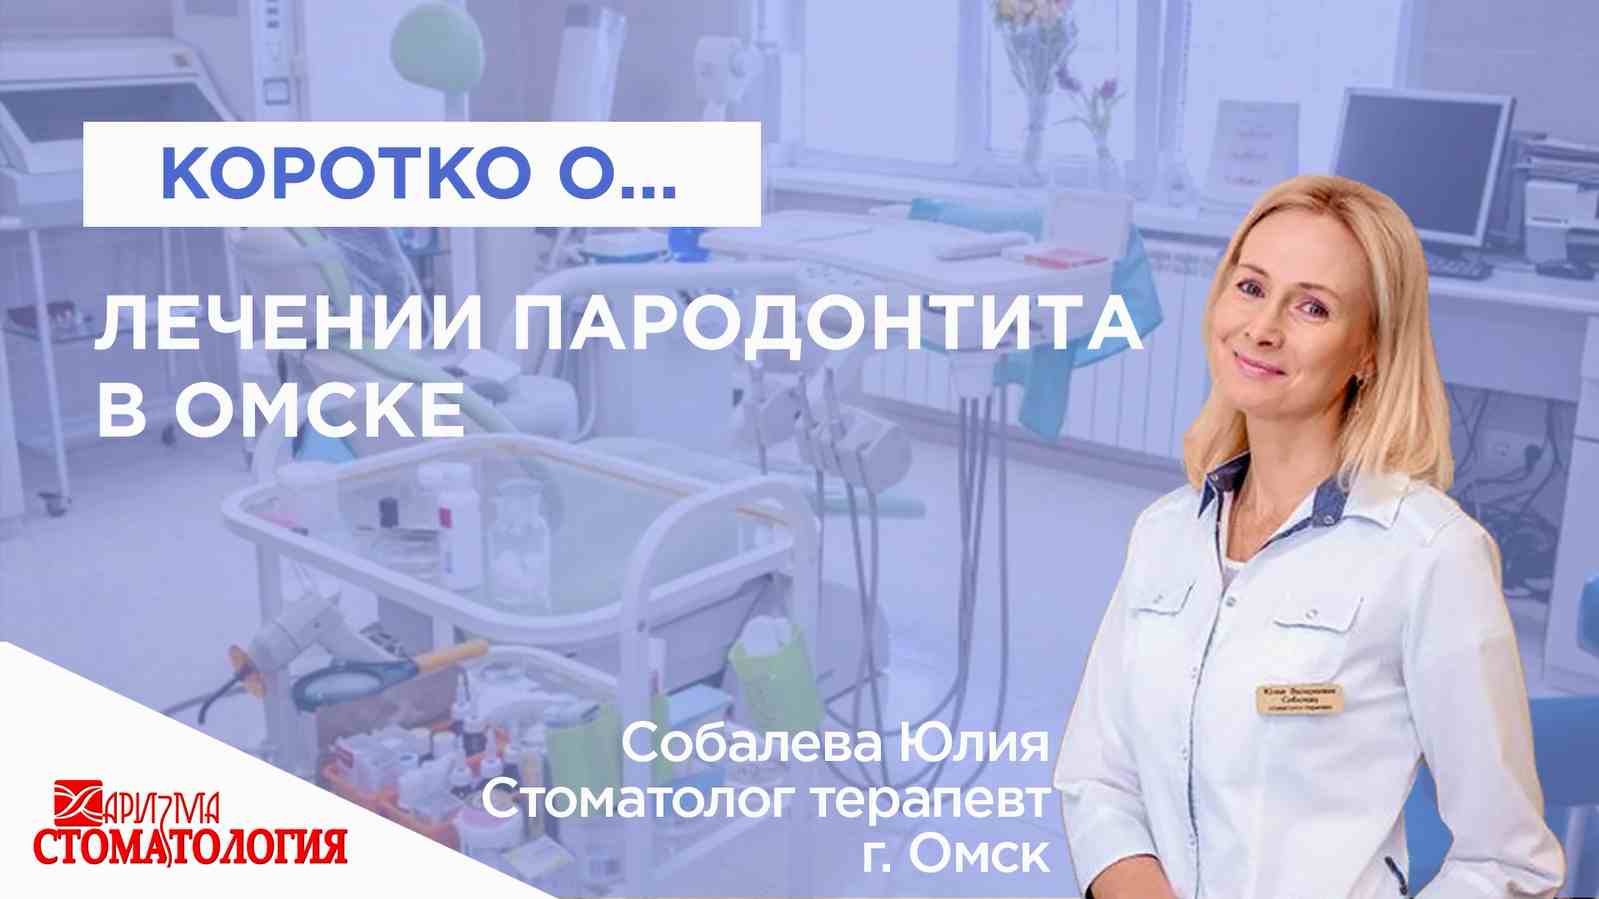 Лечение пародонтита в Омске по доступной цене в Омске в клинике Харизма недорого 